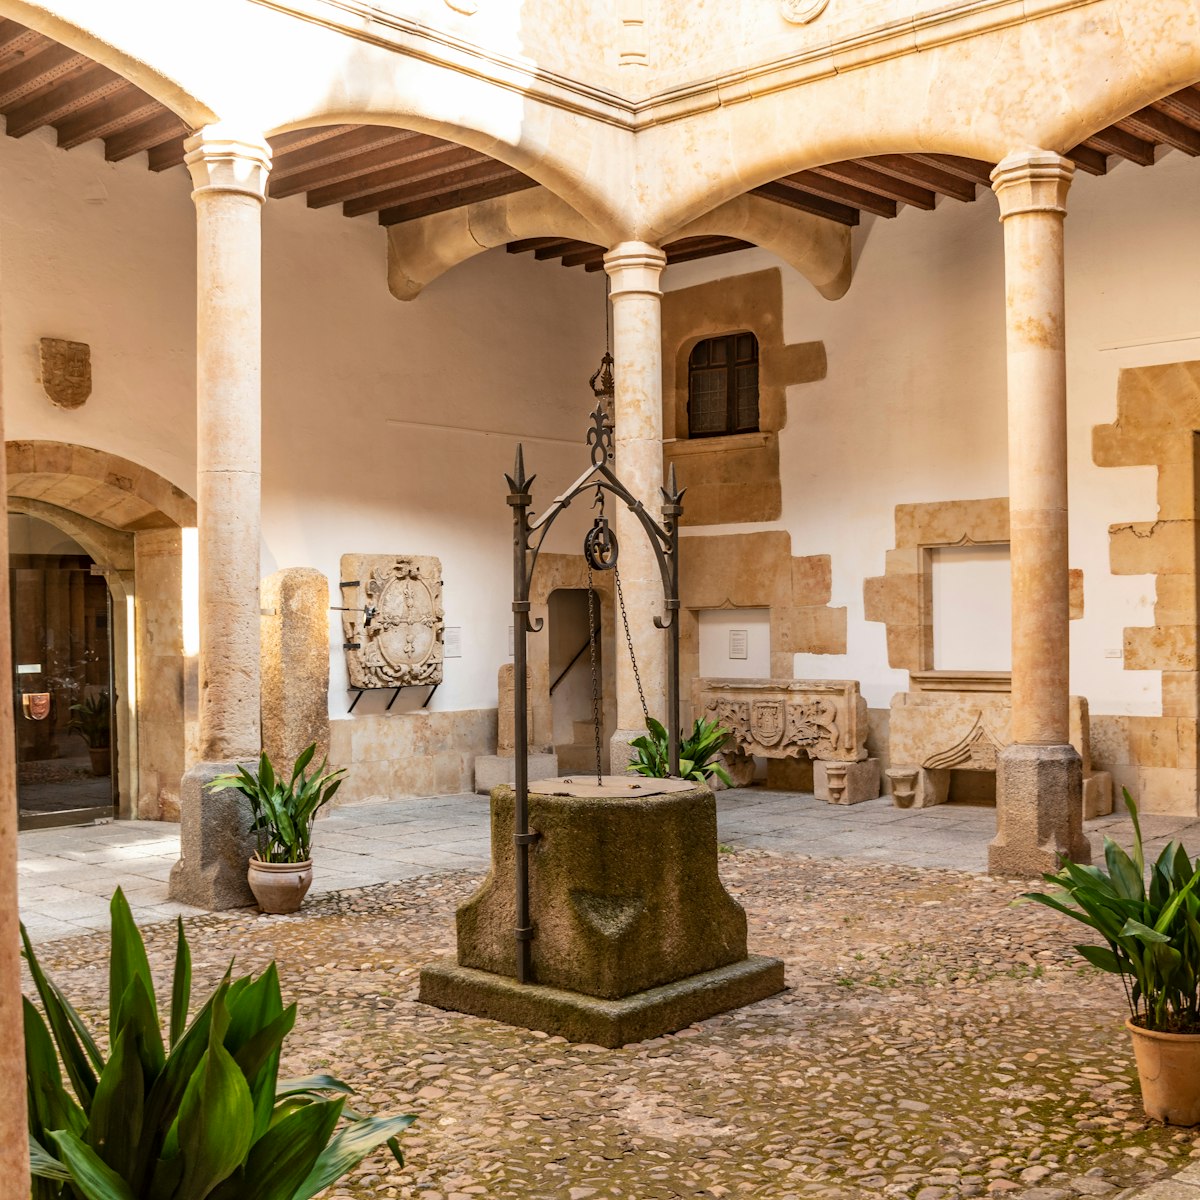 Salamanca. Spain. The courtyard of the Museo de Salamanca (Casa de los Doctores de la Reina).